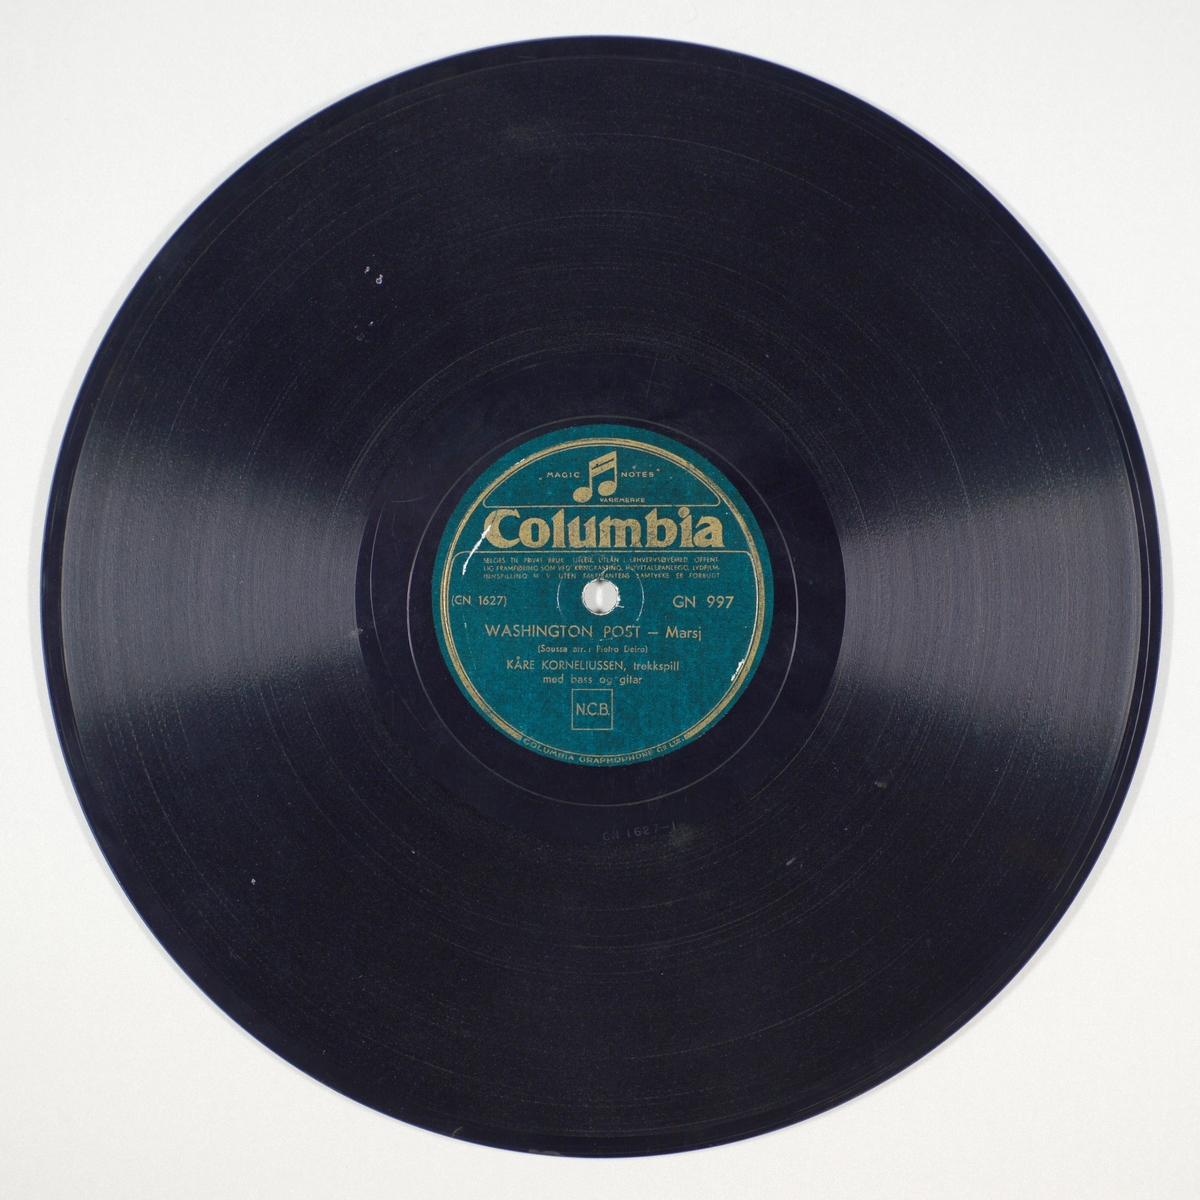 FTT.54146.01:
Svart grammofonplate laget av bakelitt og skjellak. Etiketten er mørk grønn med sølvskrift. Logoen til denne plateserien er en dobbeltnote som er øverst på etiketten.

FTT.54146.02:
Plateomslag til platen laget av papir i fargene rødt og hvitt og er identisk på begge sider. Plateomslaget er ikke originalt da det er omslaget til en Polydor-plate. På omslaget står plateselskapets navn. På forsidensiden er det trykt "Dans og underholdning. 78 omdreininger", mens det på baksiden står selskapets rettigheter. Logoen til Polydor står øverst til venstre, mens det nederst til høyre er en mannsfigur med en kontrabass og en dame foran en mikrofon.